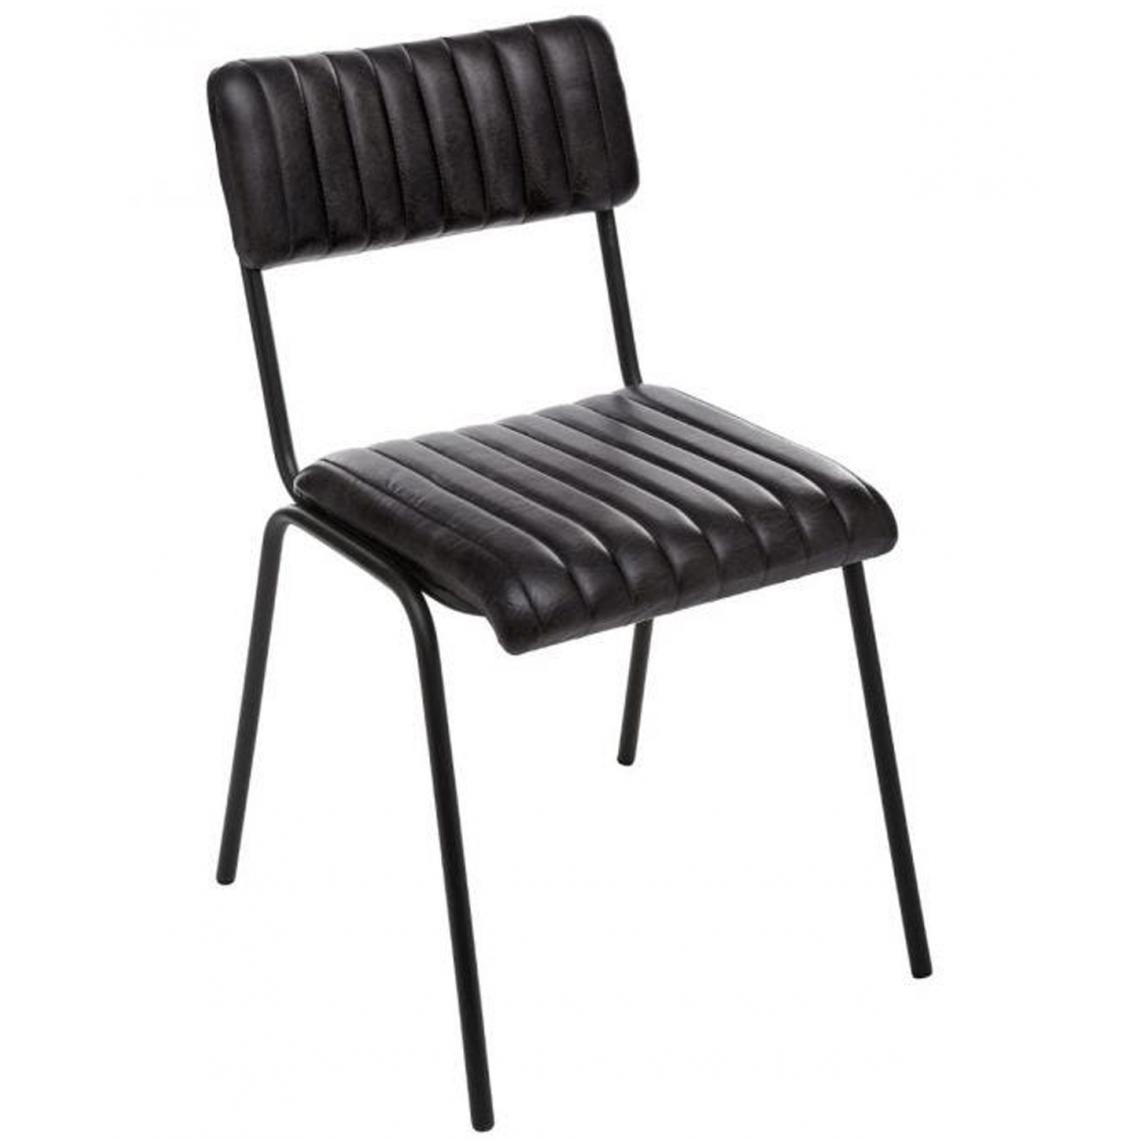 Pegane - Lot de 4 chaises coloris noir en cuir / fer - Longueur 46,5 x Profondeur 51,5 x Hauteur 78 cm - Chaises